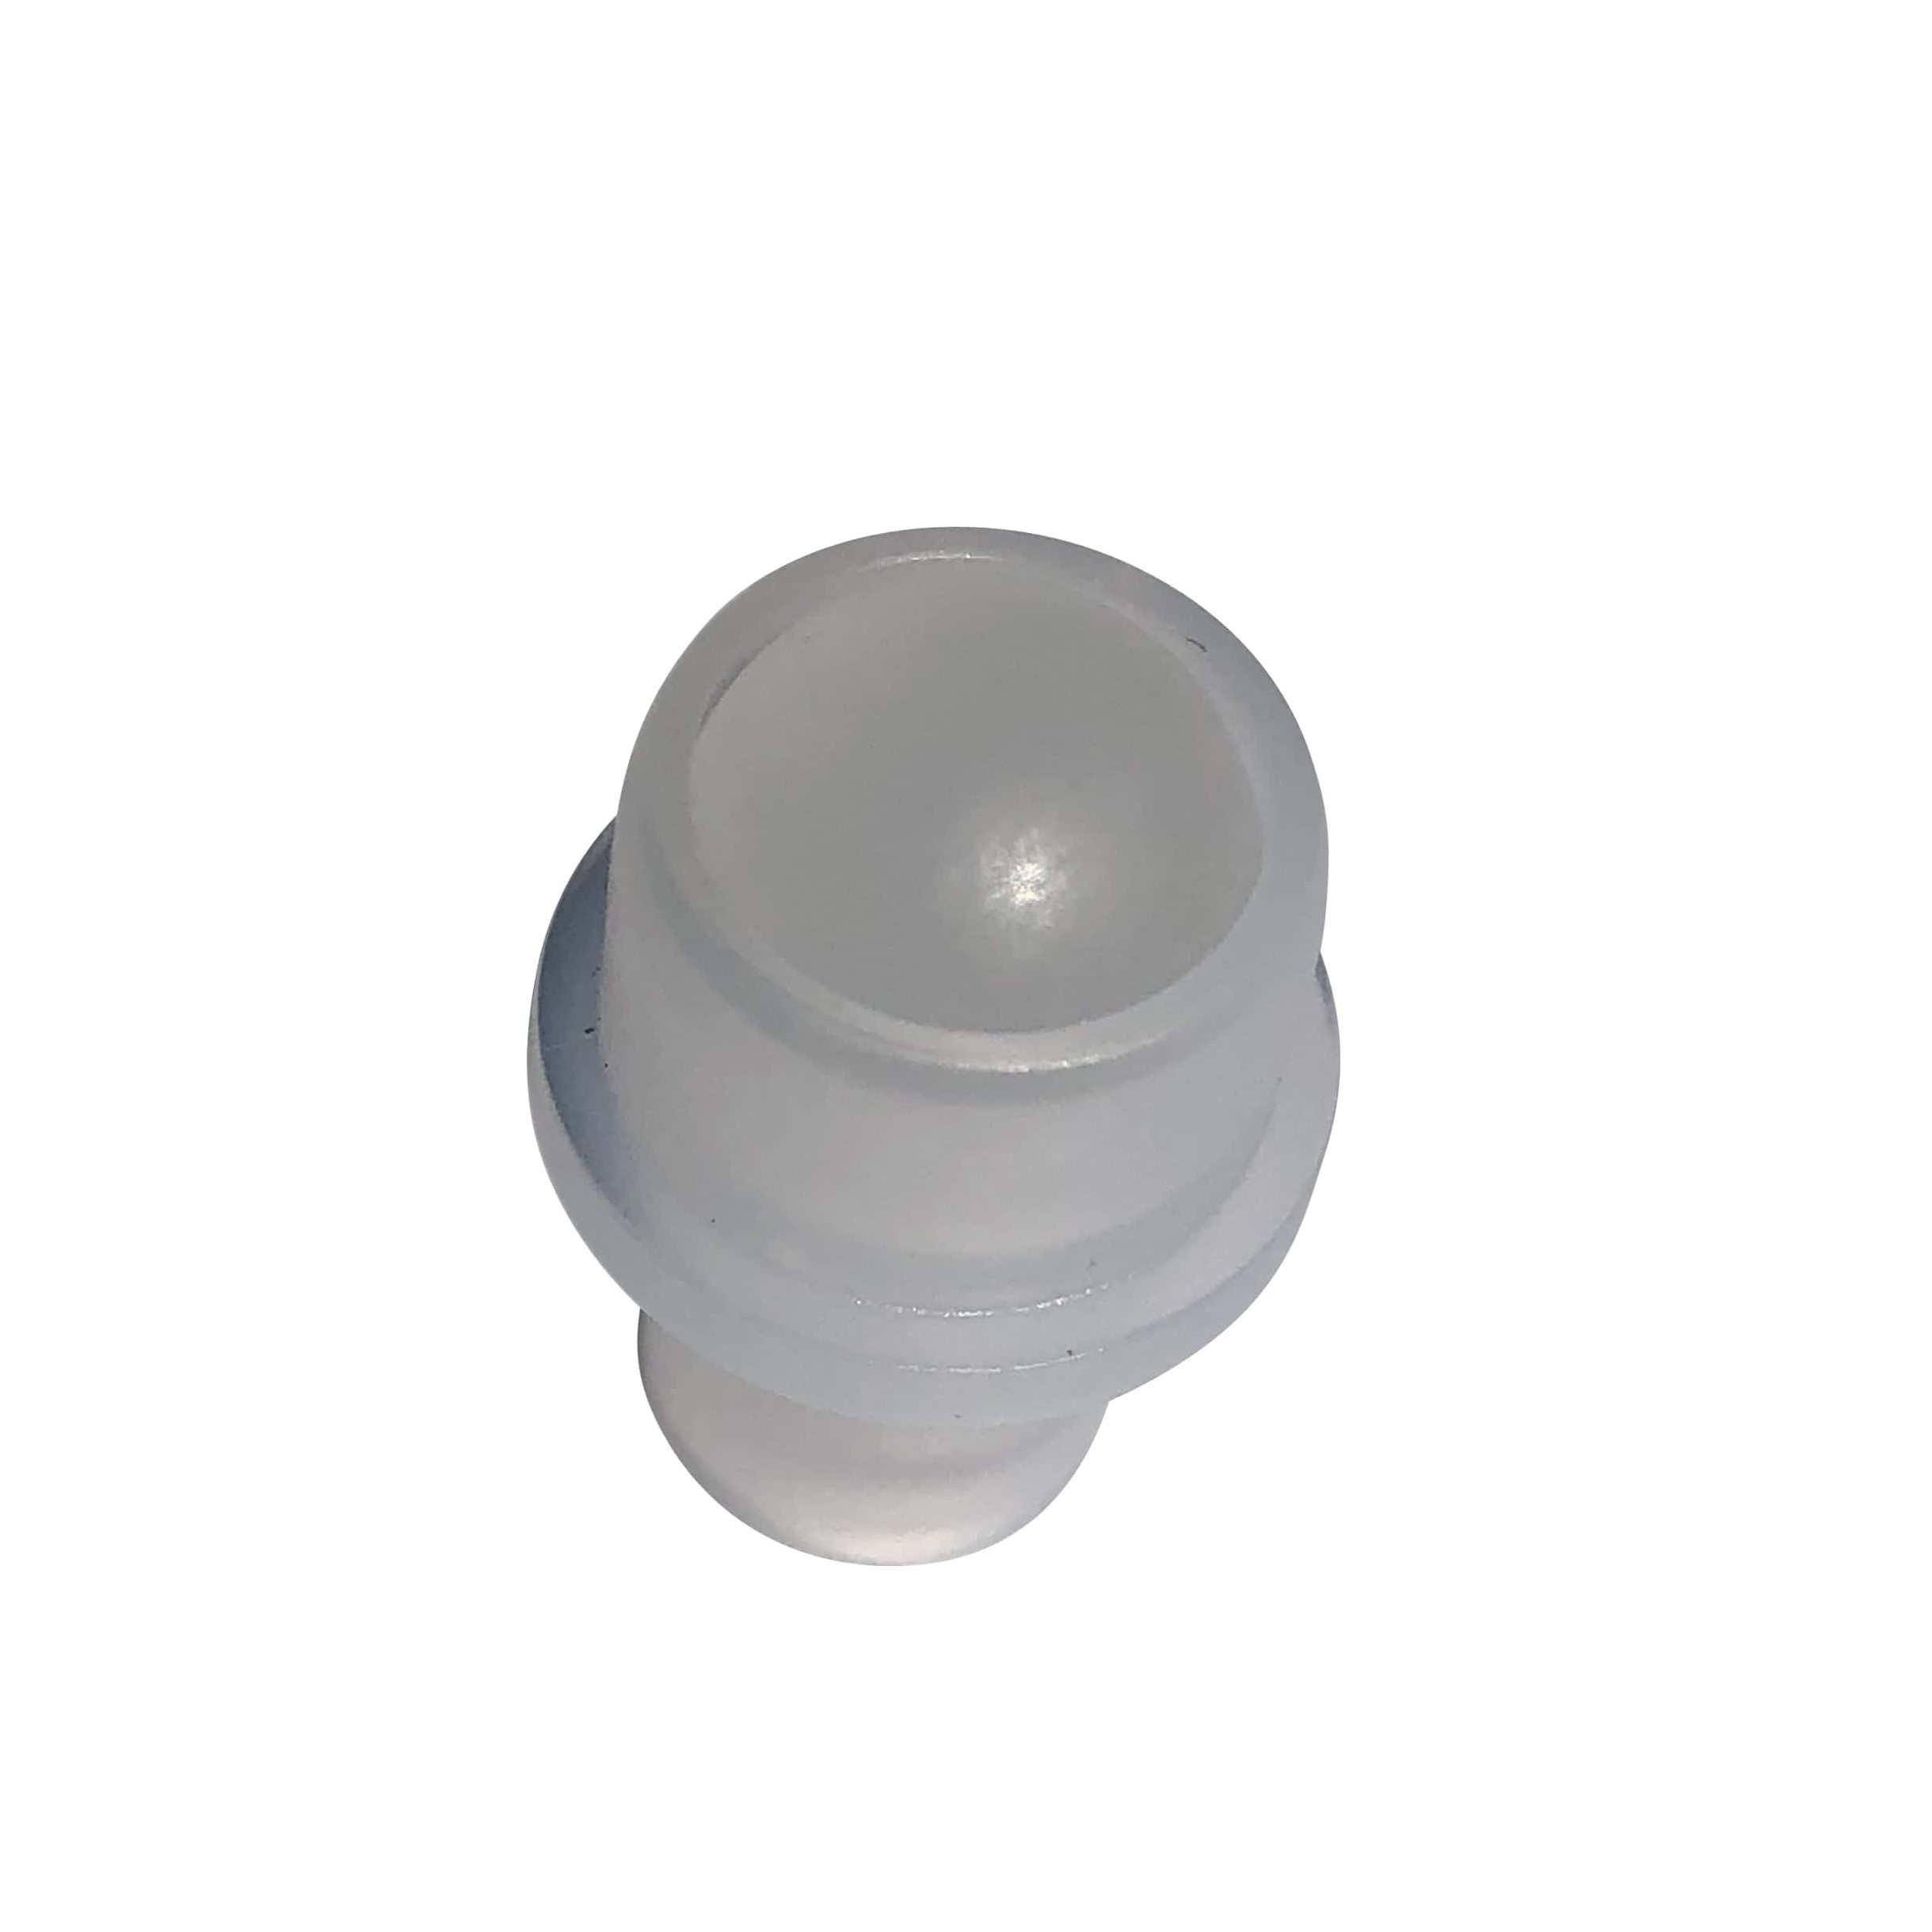 Wkładka do butelki typu roll-on 10 ml, tworzywo sztuczne LDPE, kolor naturalny